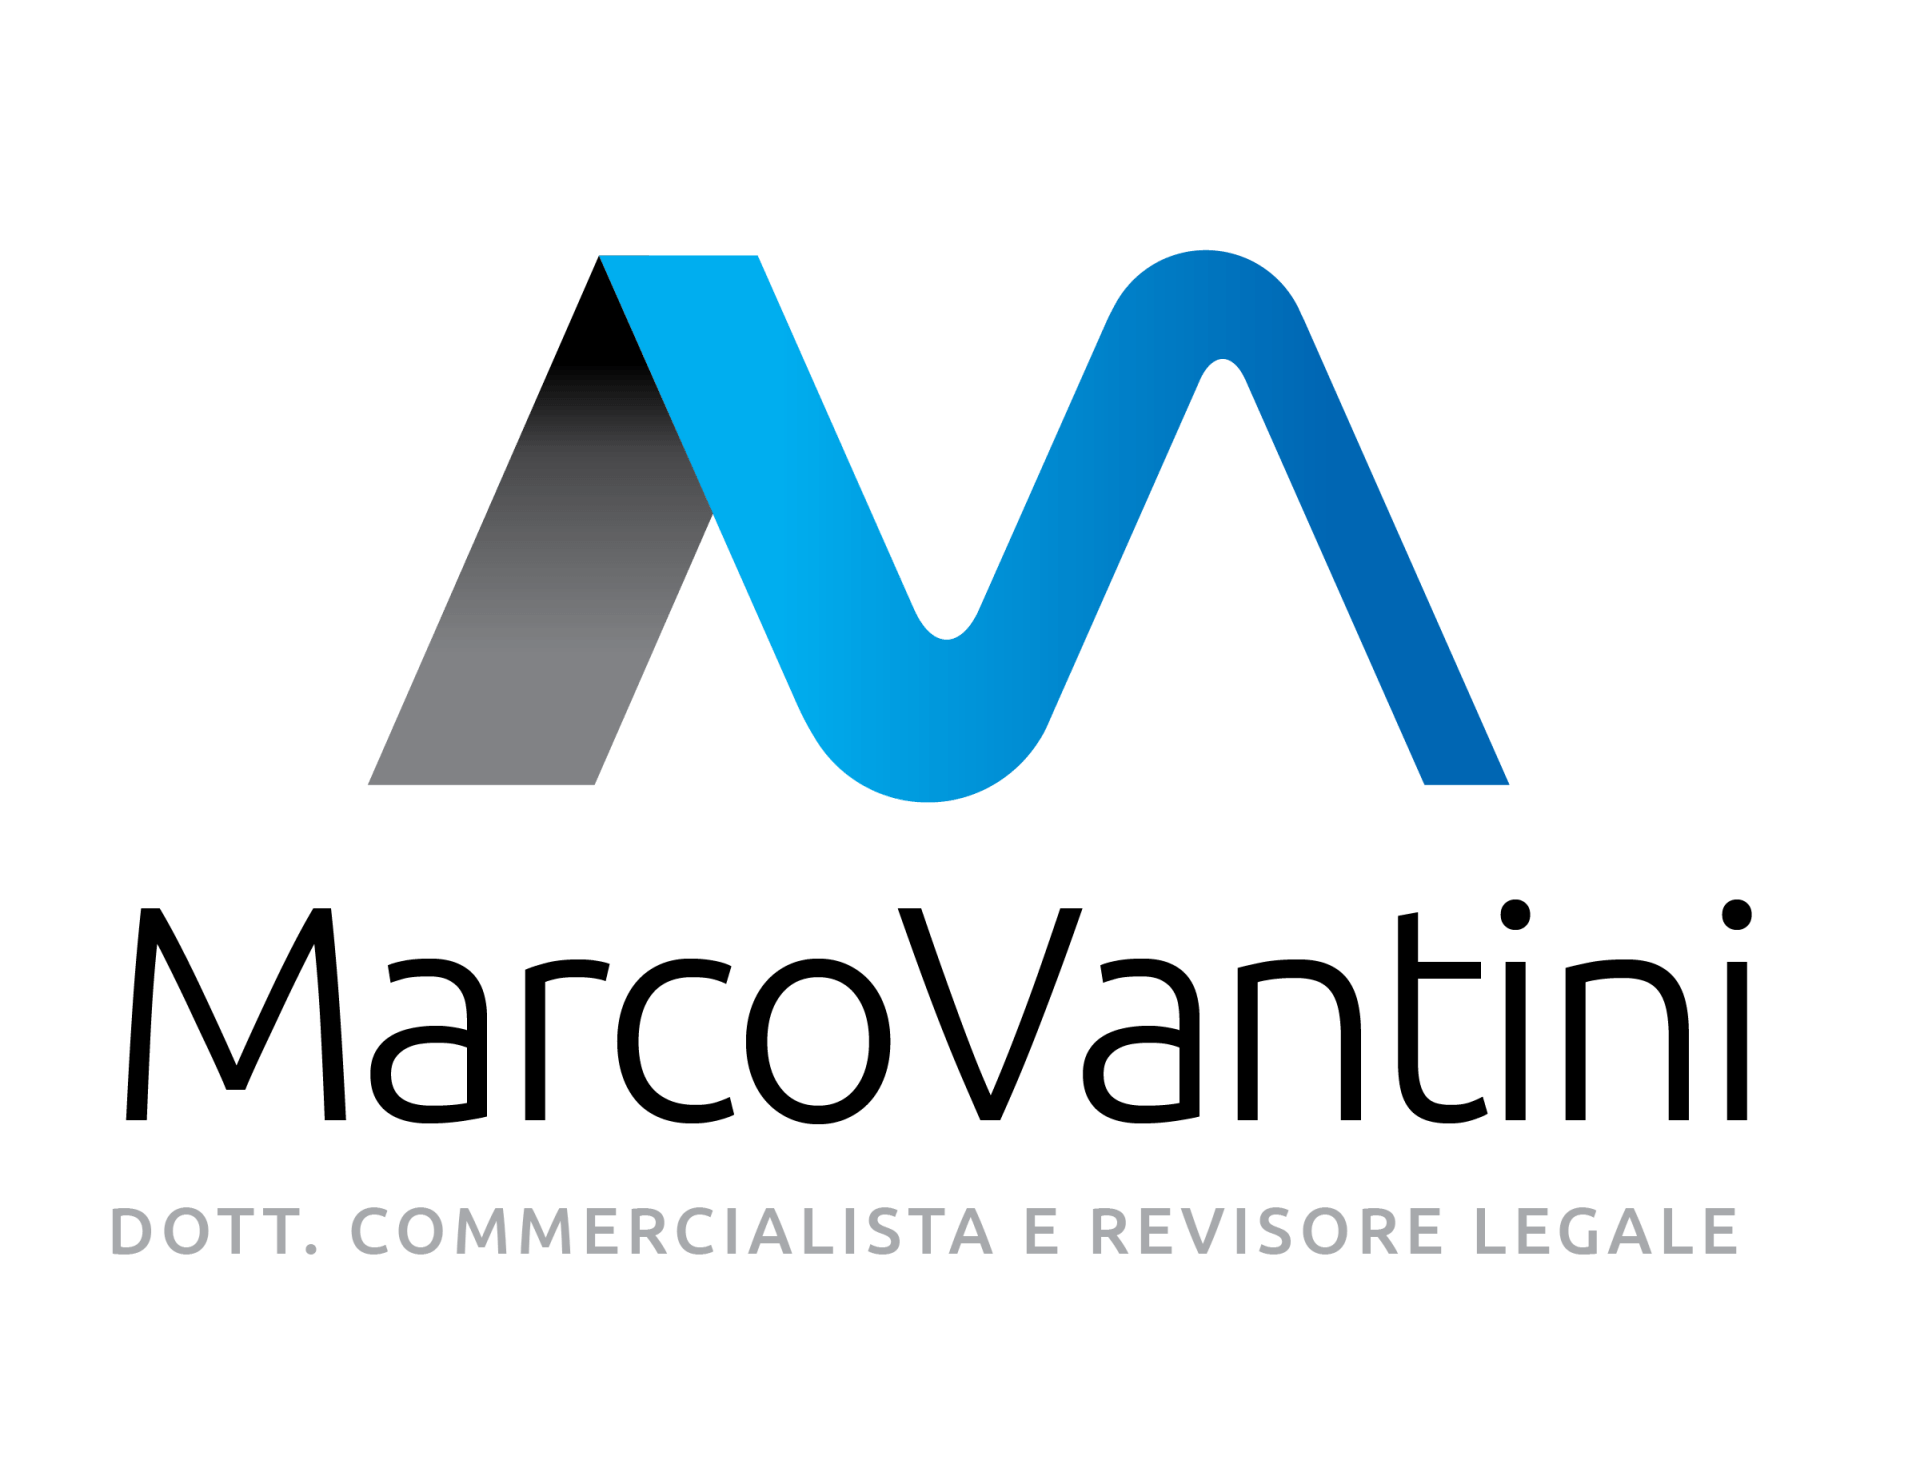 Un logo blu e nero per Marco Vantini